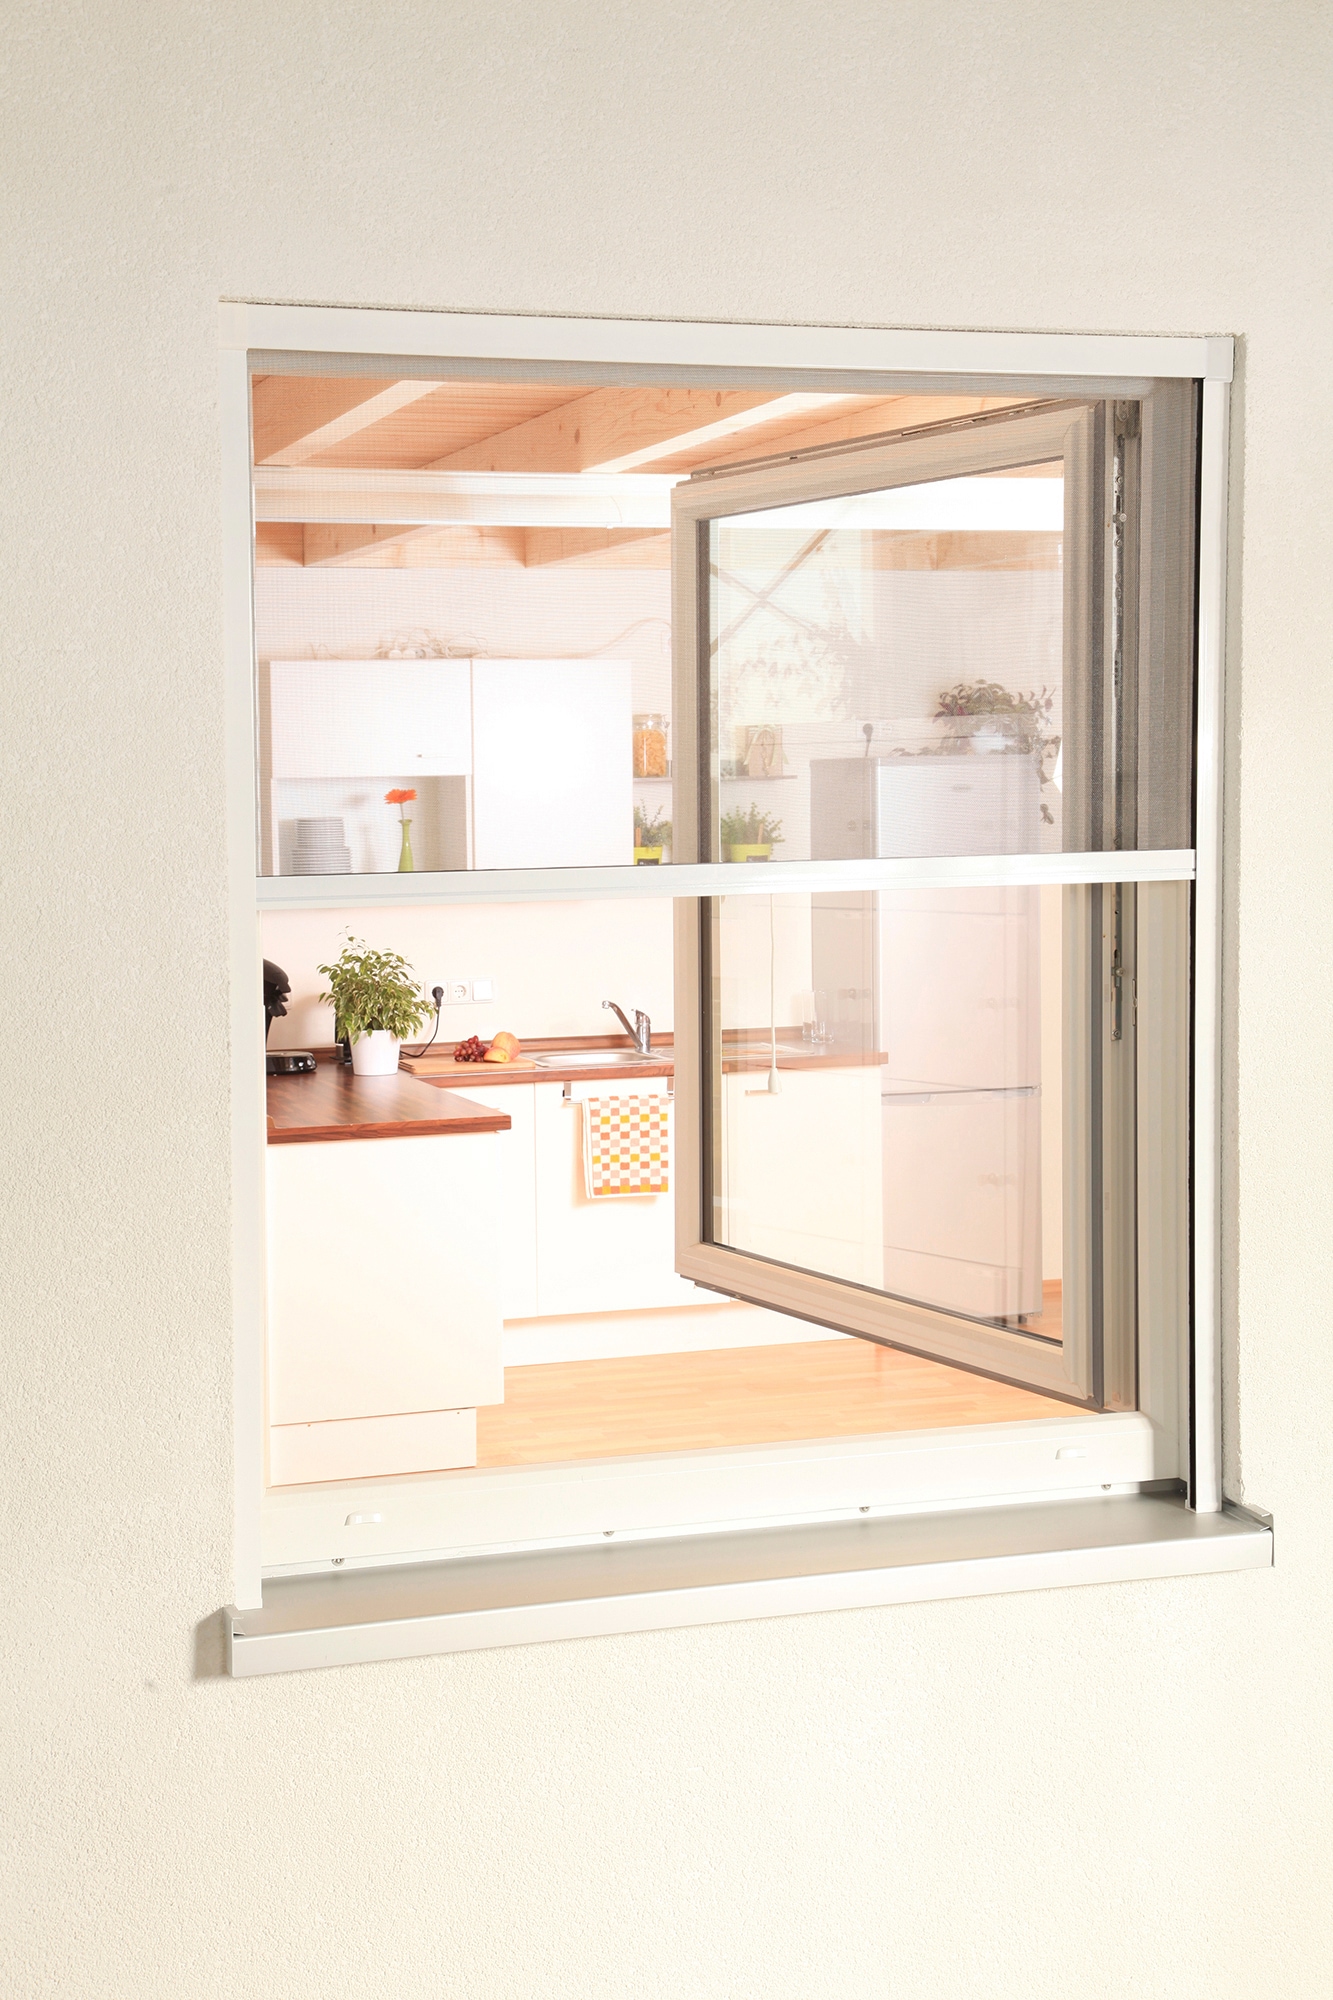 Insektenschutzrollo »SMART«, transparent, für Fenster, weiß/anthrazit, BxH: 80x160 cm